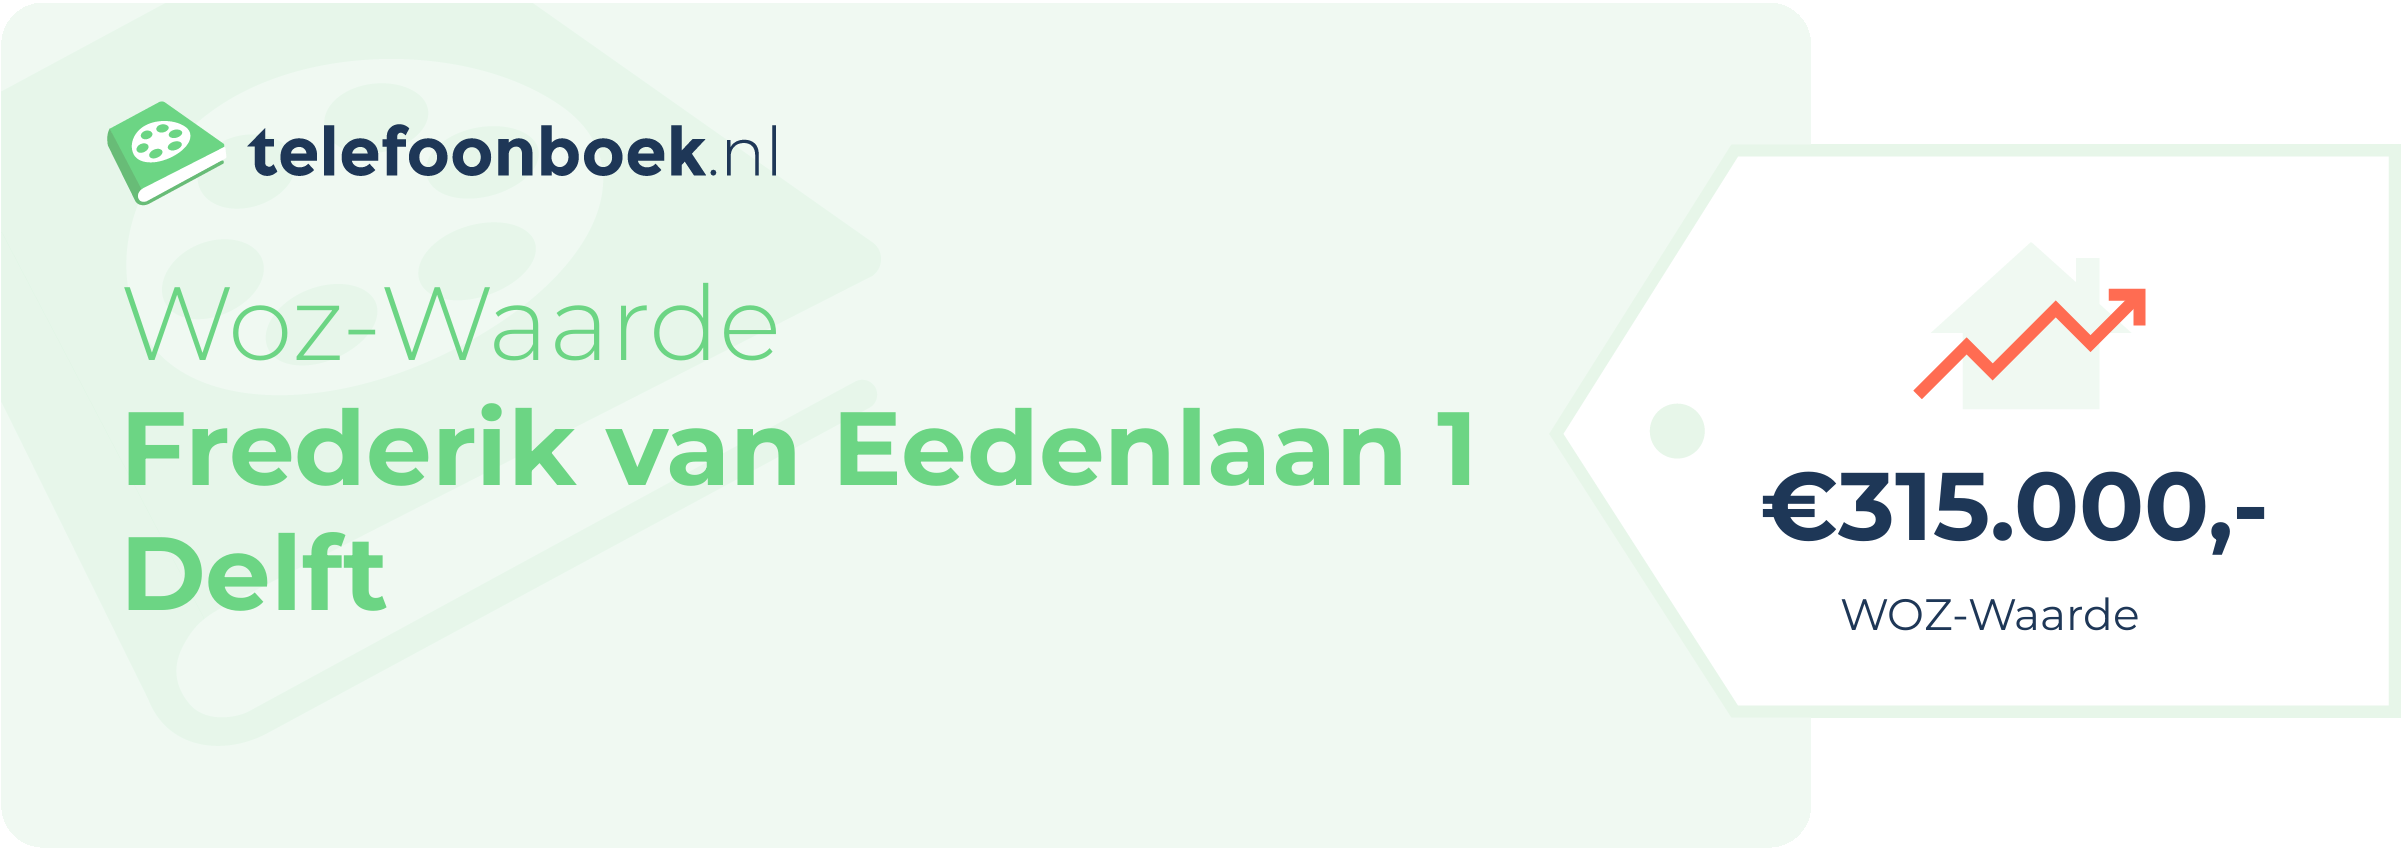 WOZ-waarde Frederik Van Eedenlaan 1 Delft